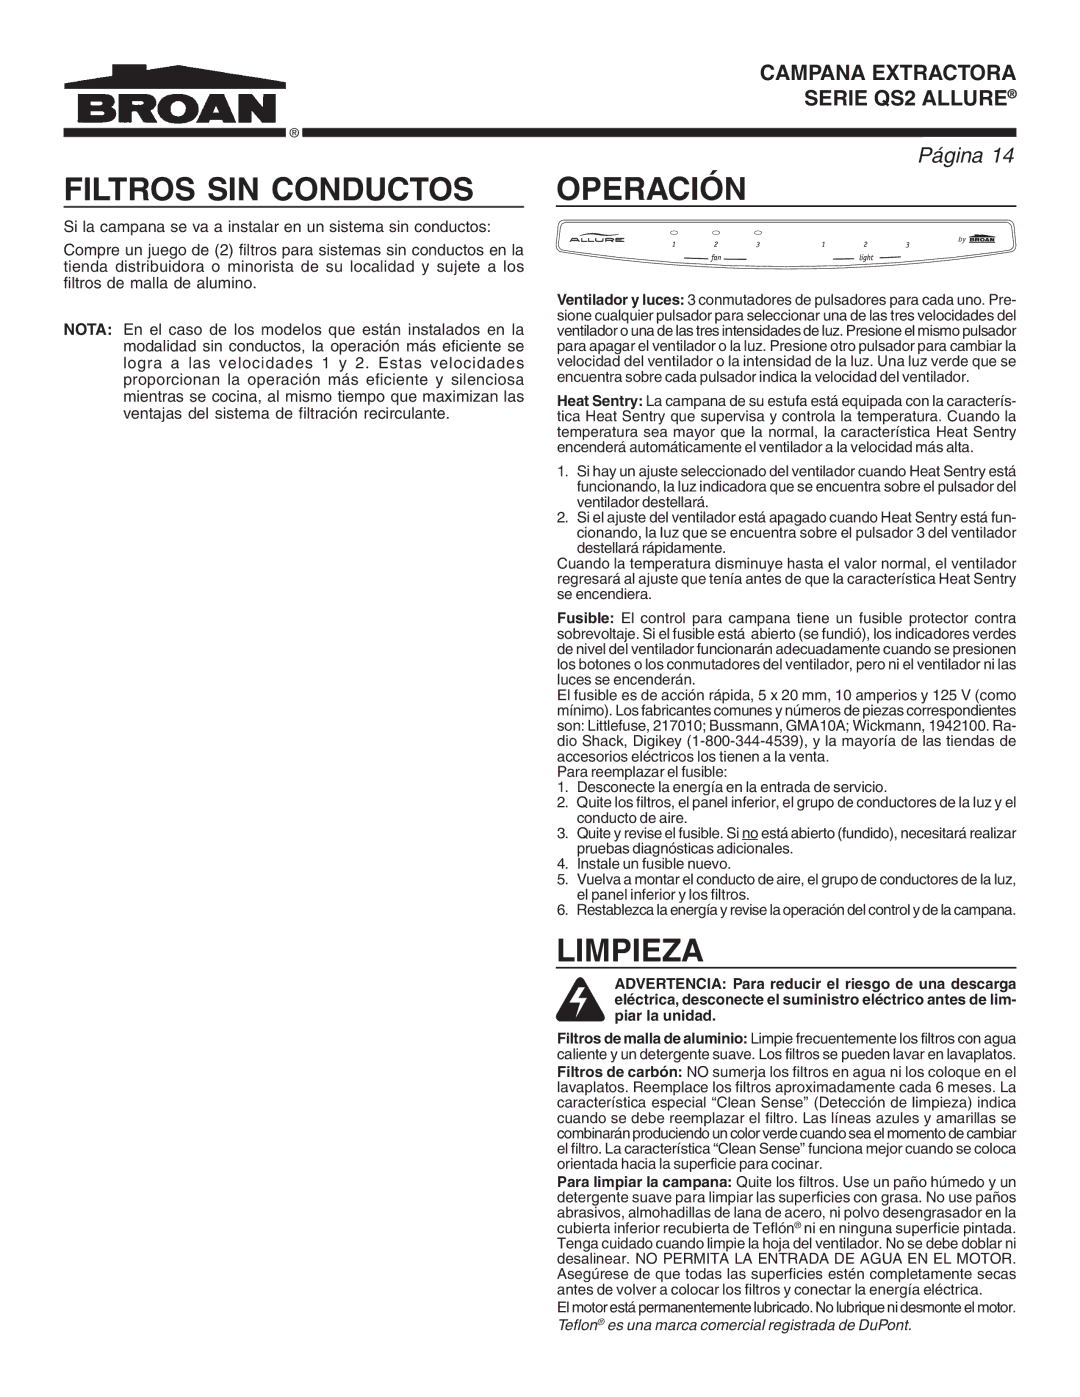 Broan QS2 warranty Filtros SIN Conductos, Operación, Limpieza 